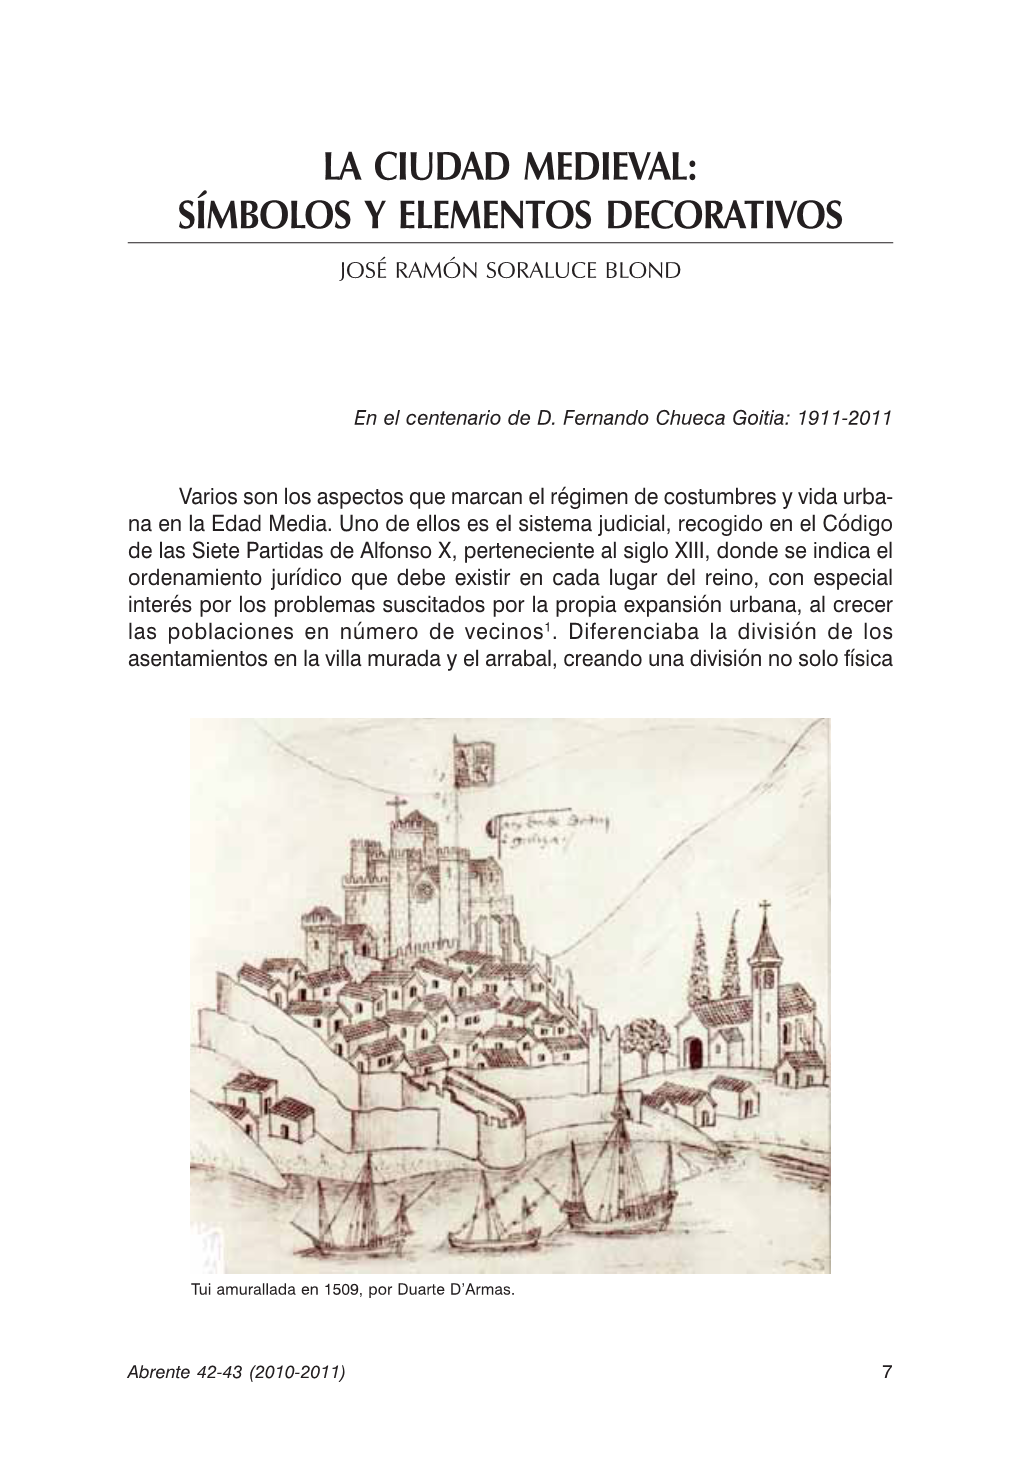 La Ciudad Medieval: Símbolos Y Elementos Decorativos José Ramón Soraluce Blond